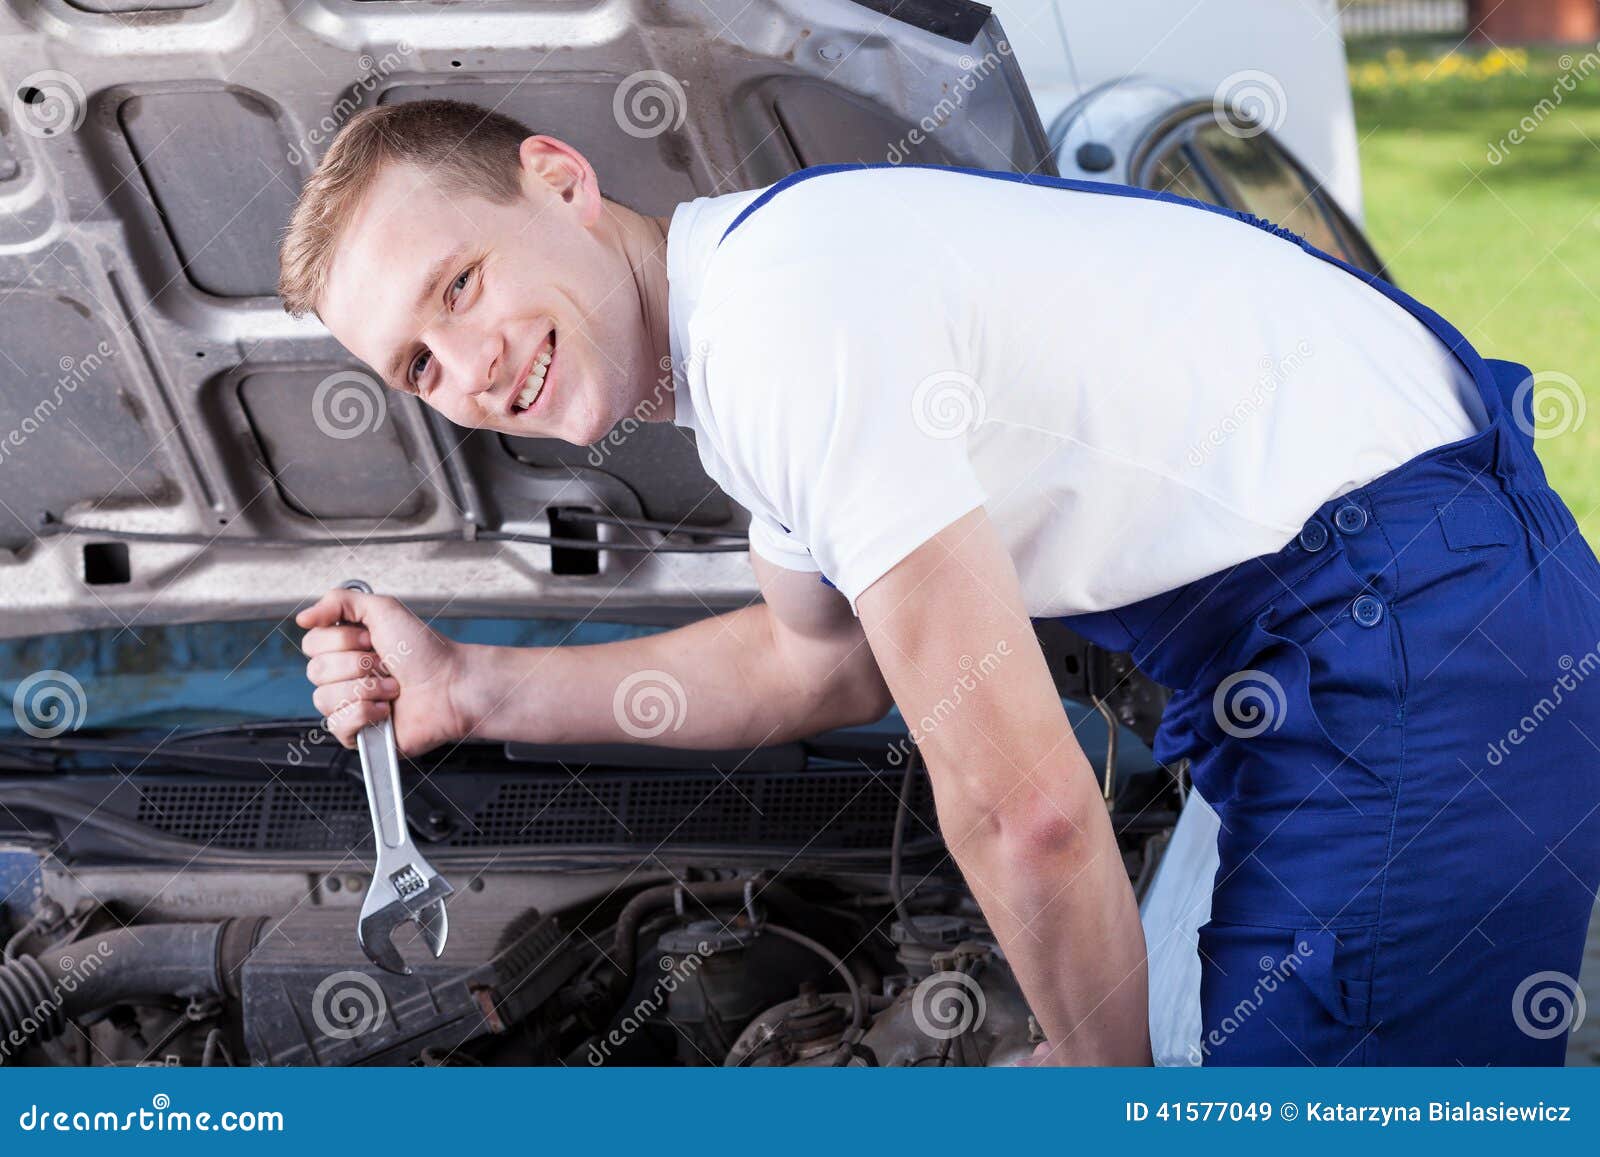 Самозанятый ремонт автомобилей. Автослесарь. Мужчина ремонтирует машину. Парень чинит авто. Мужик чинит машину.